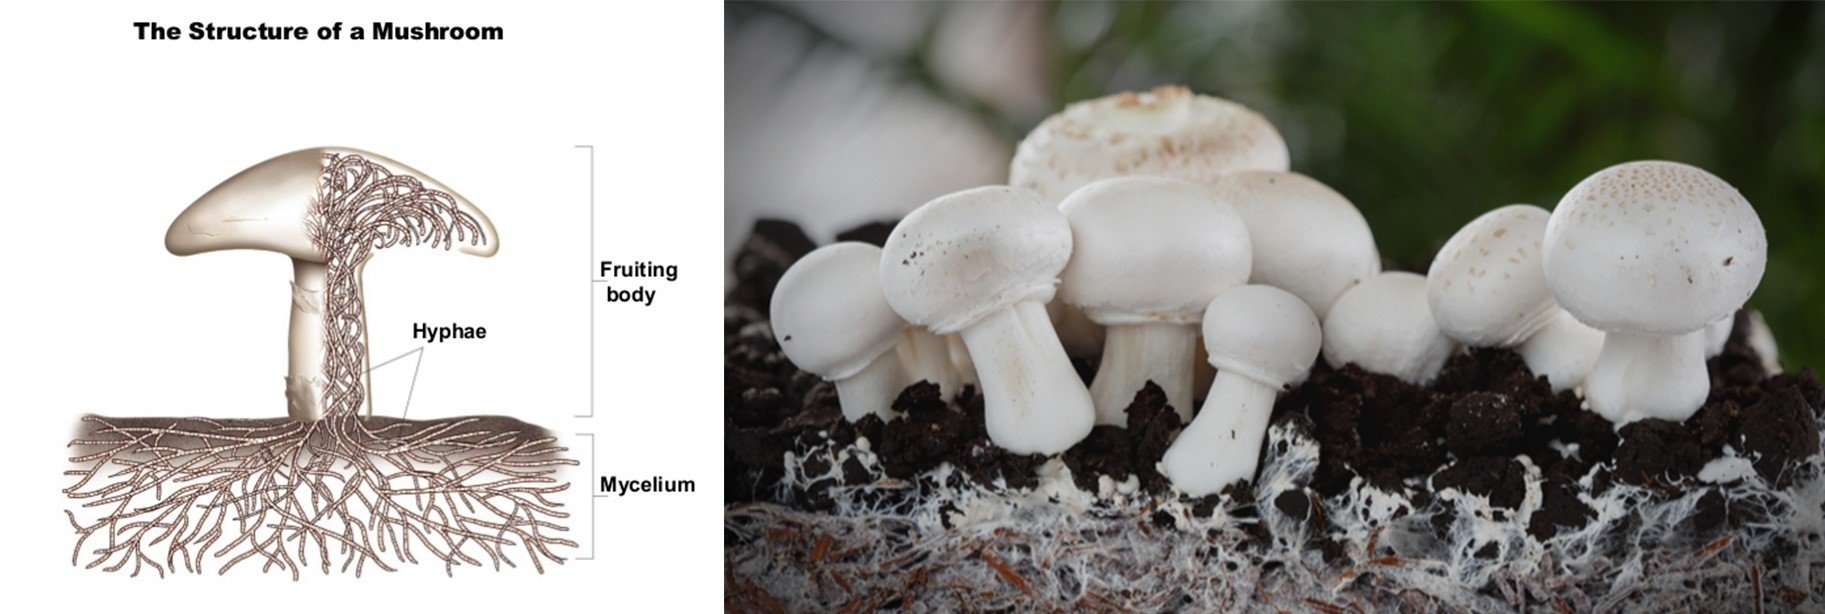 mycelium structure